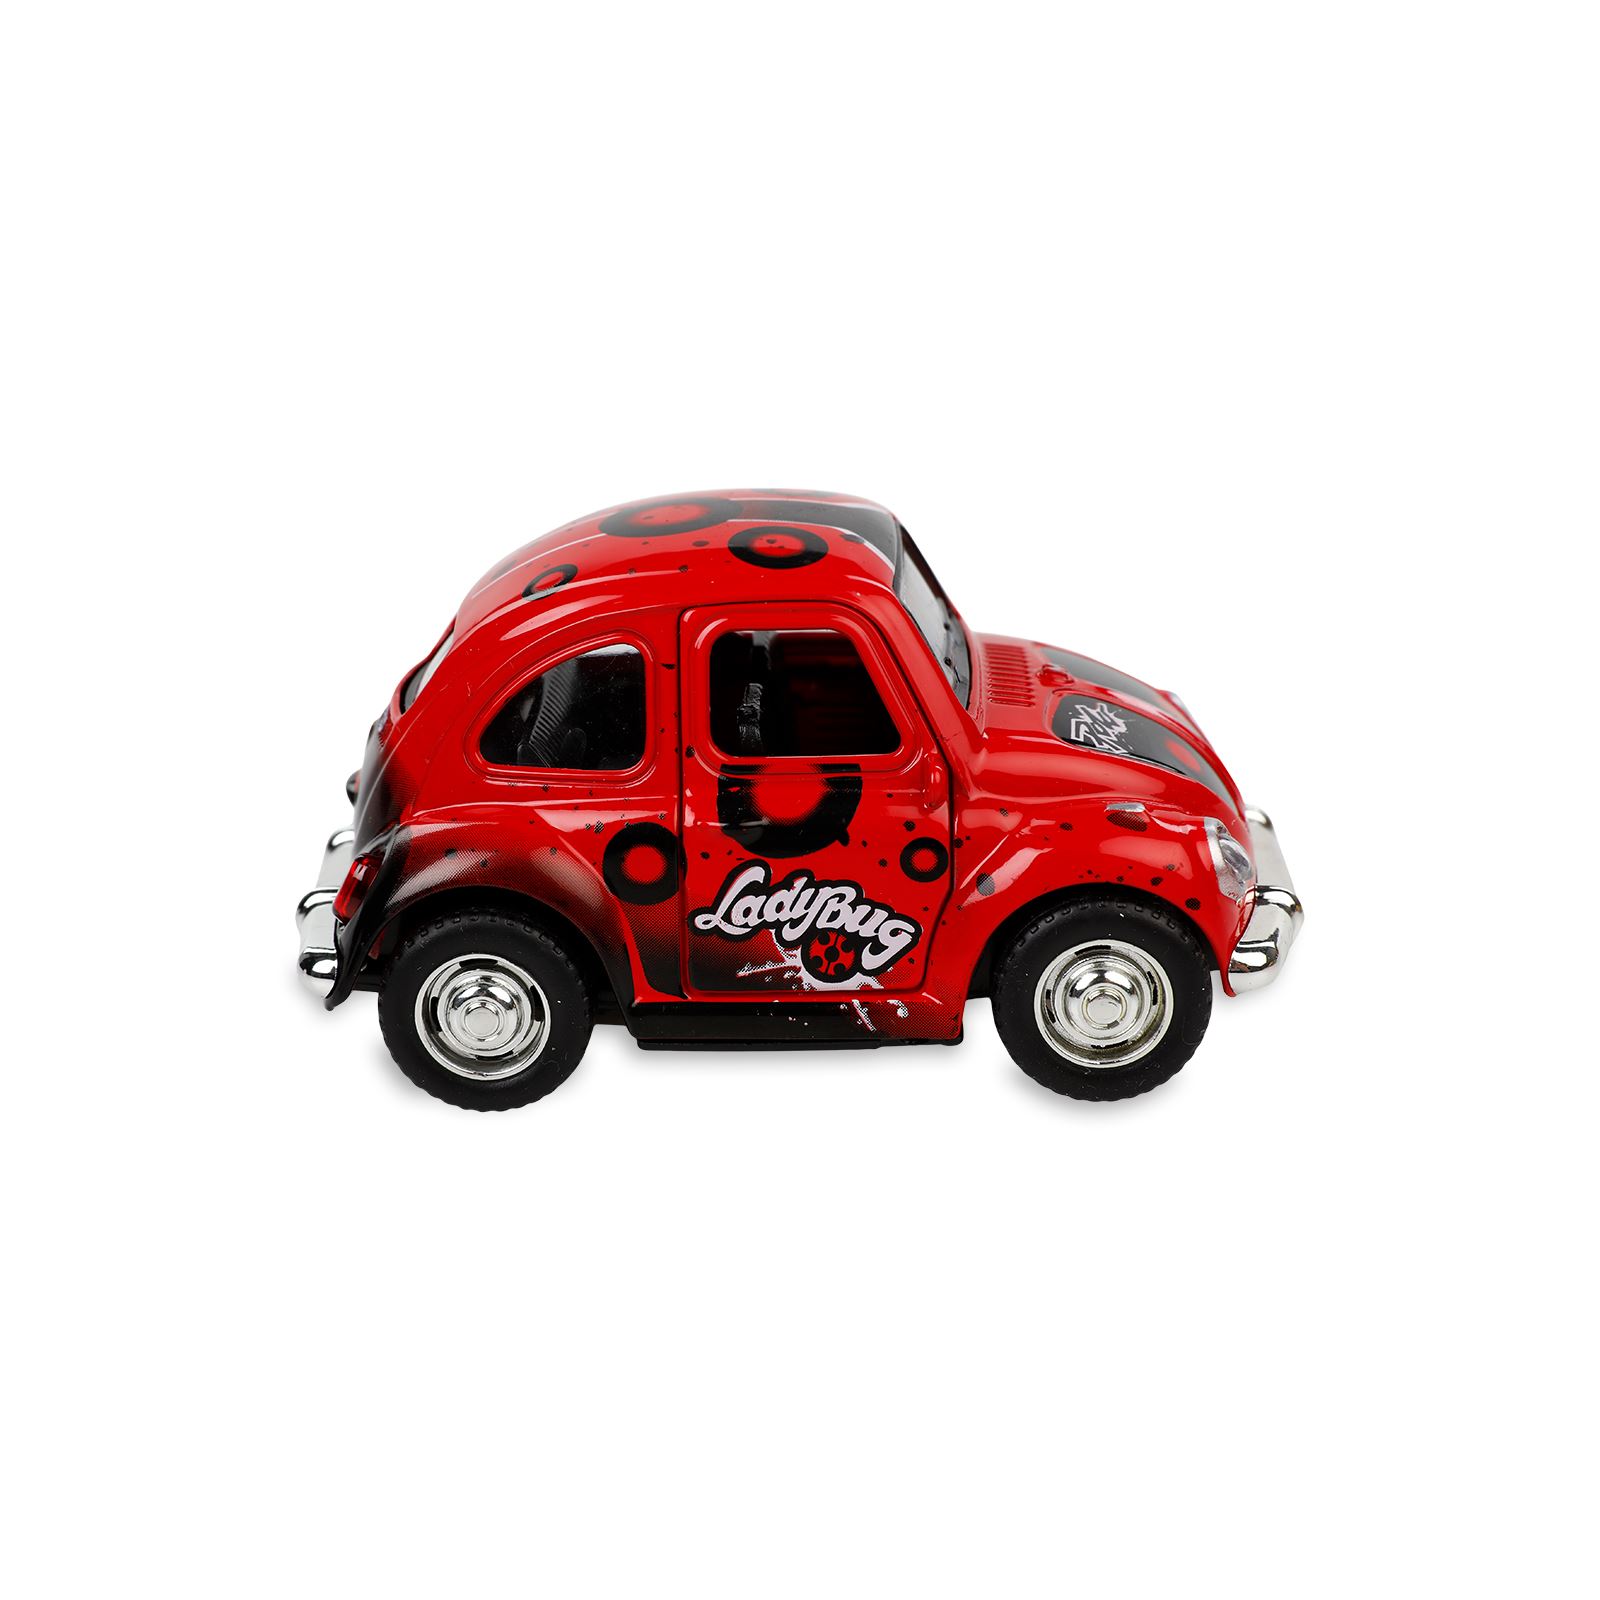 Vardem Oyuncak Çek Bırak Kaplumbağa Desenli Araba Kırmızı